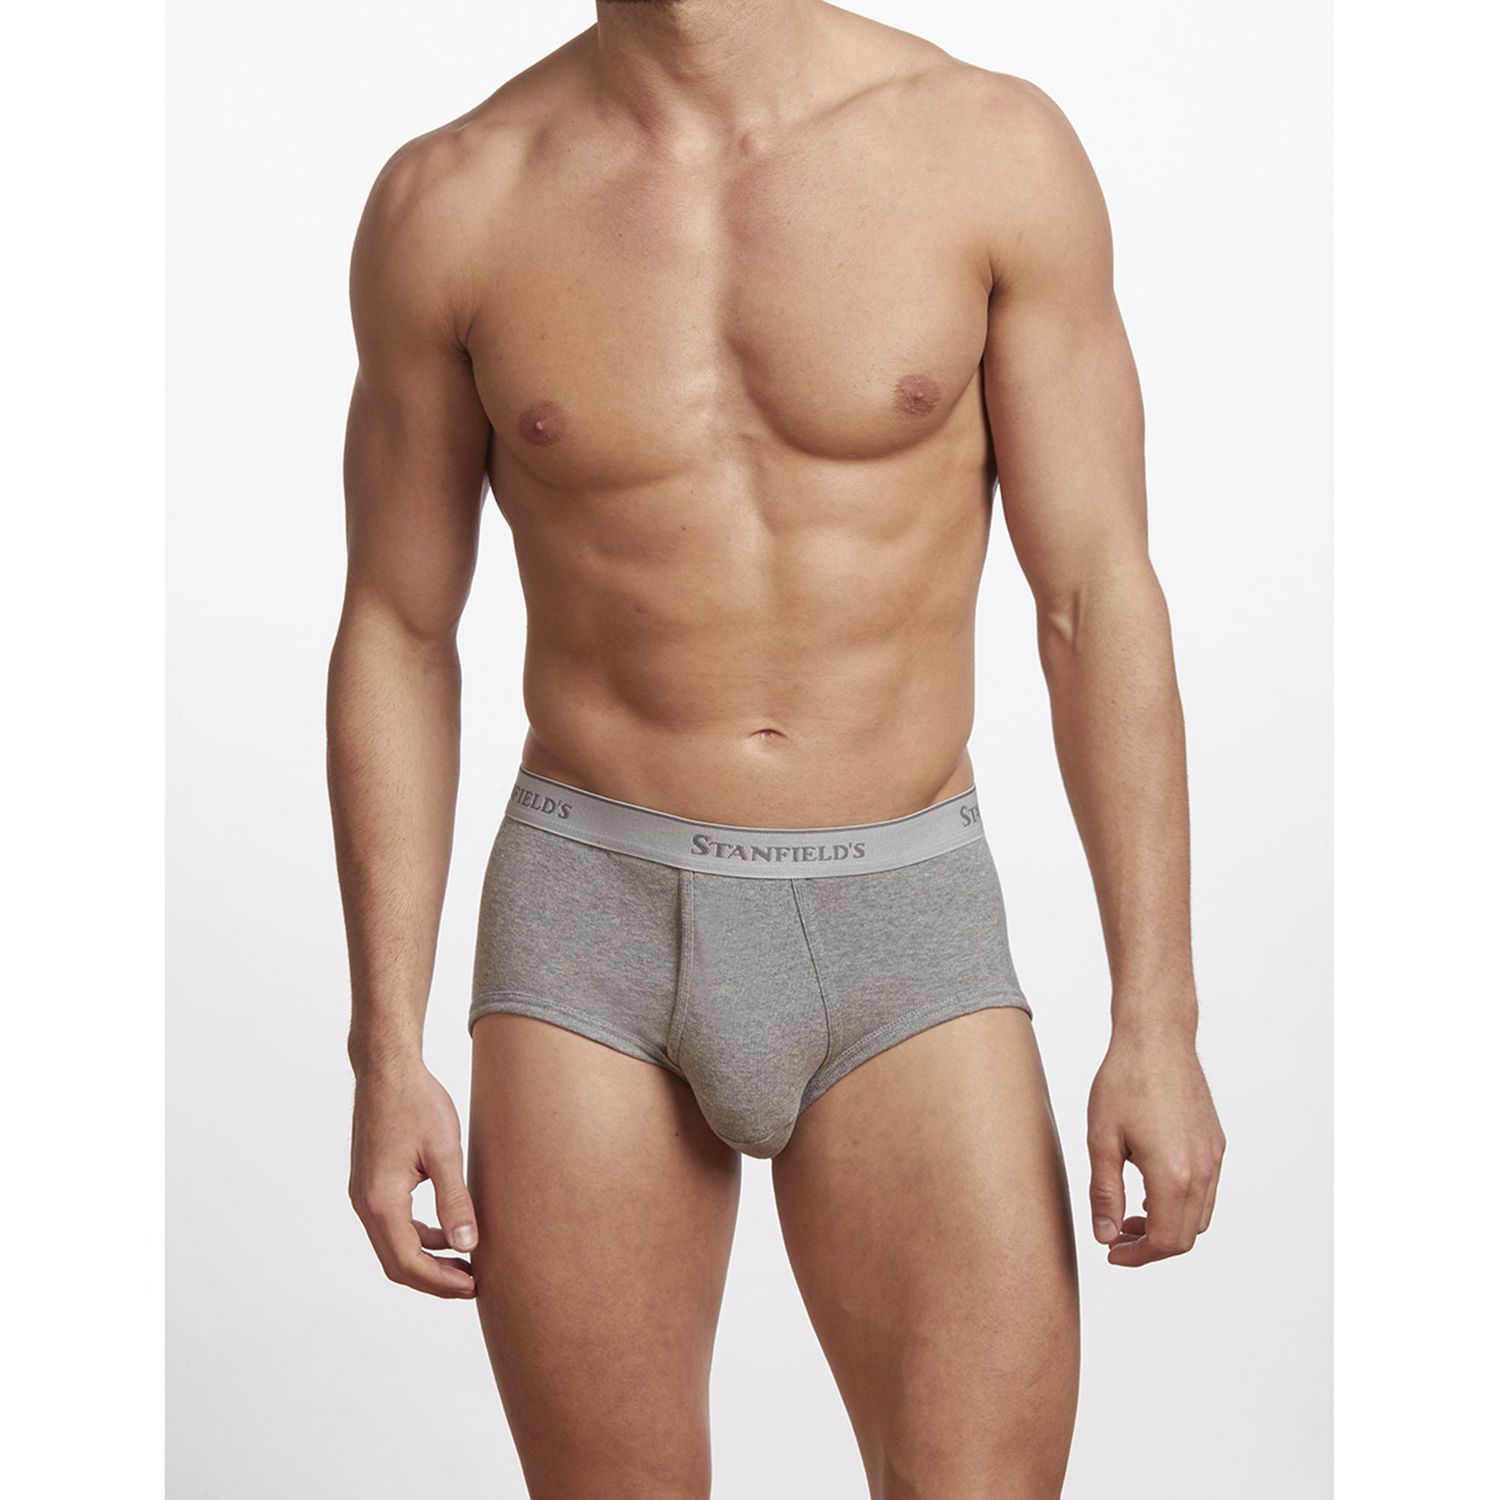 Stanfield's Adult Mens Cotton Medi Brief Underwear, Sizes S-XL